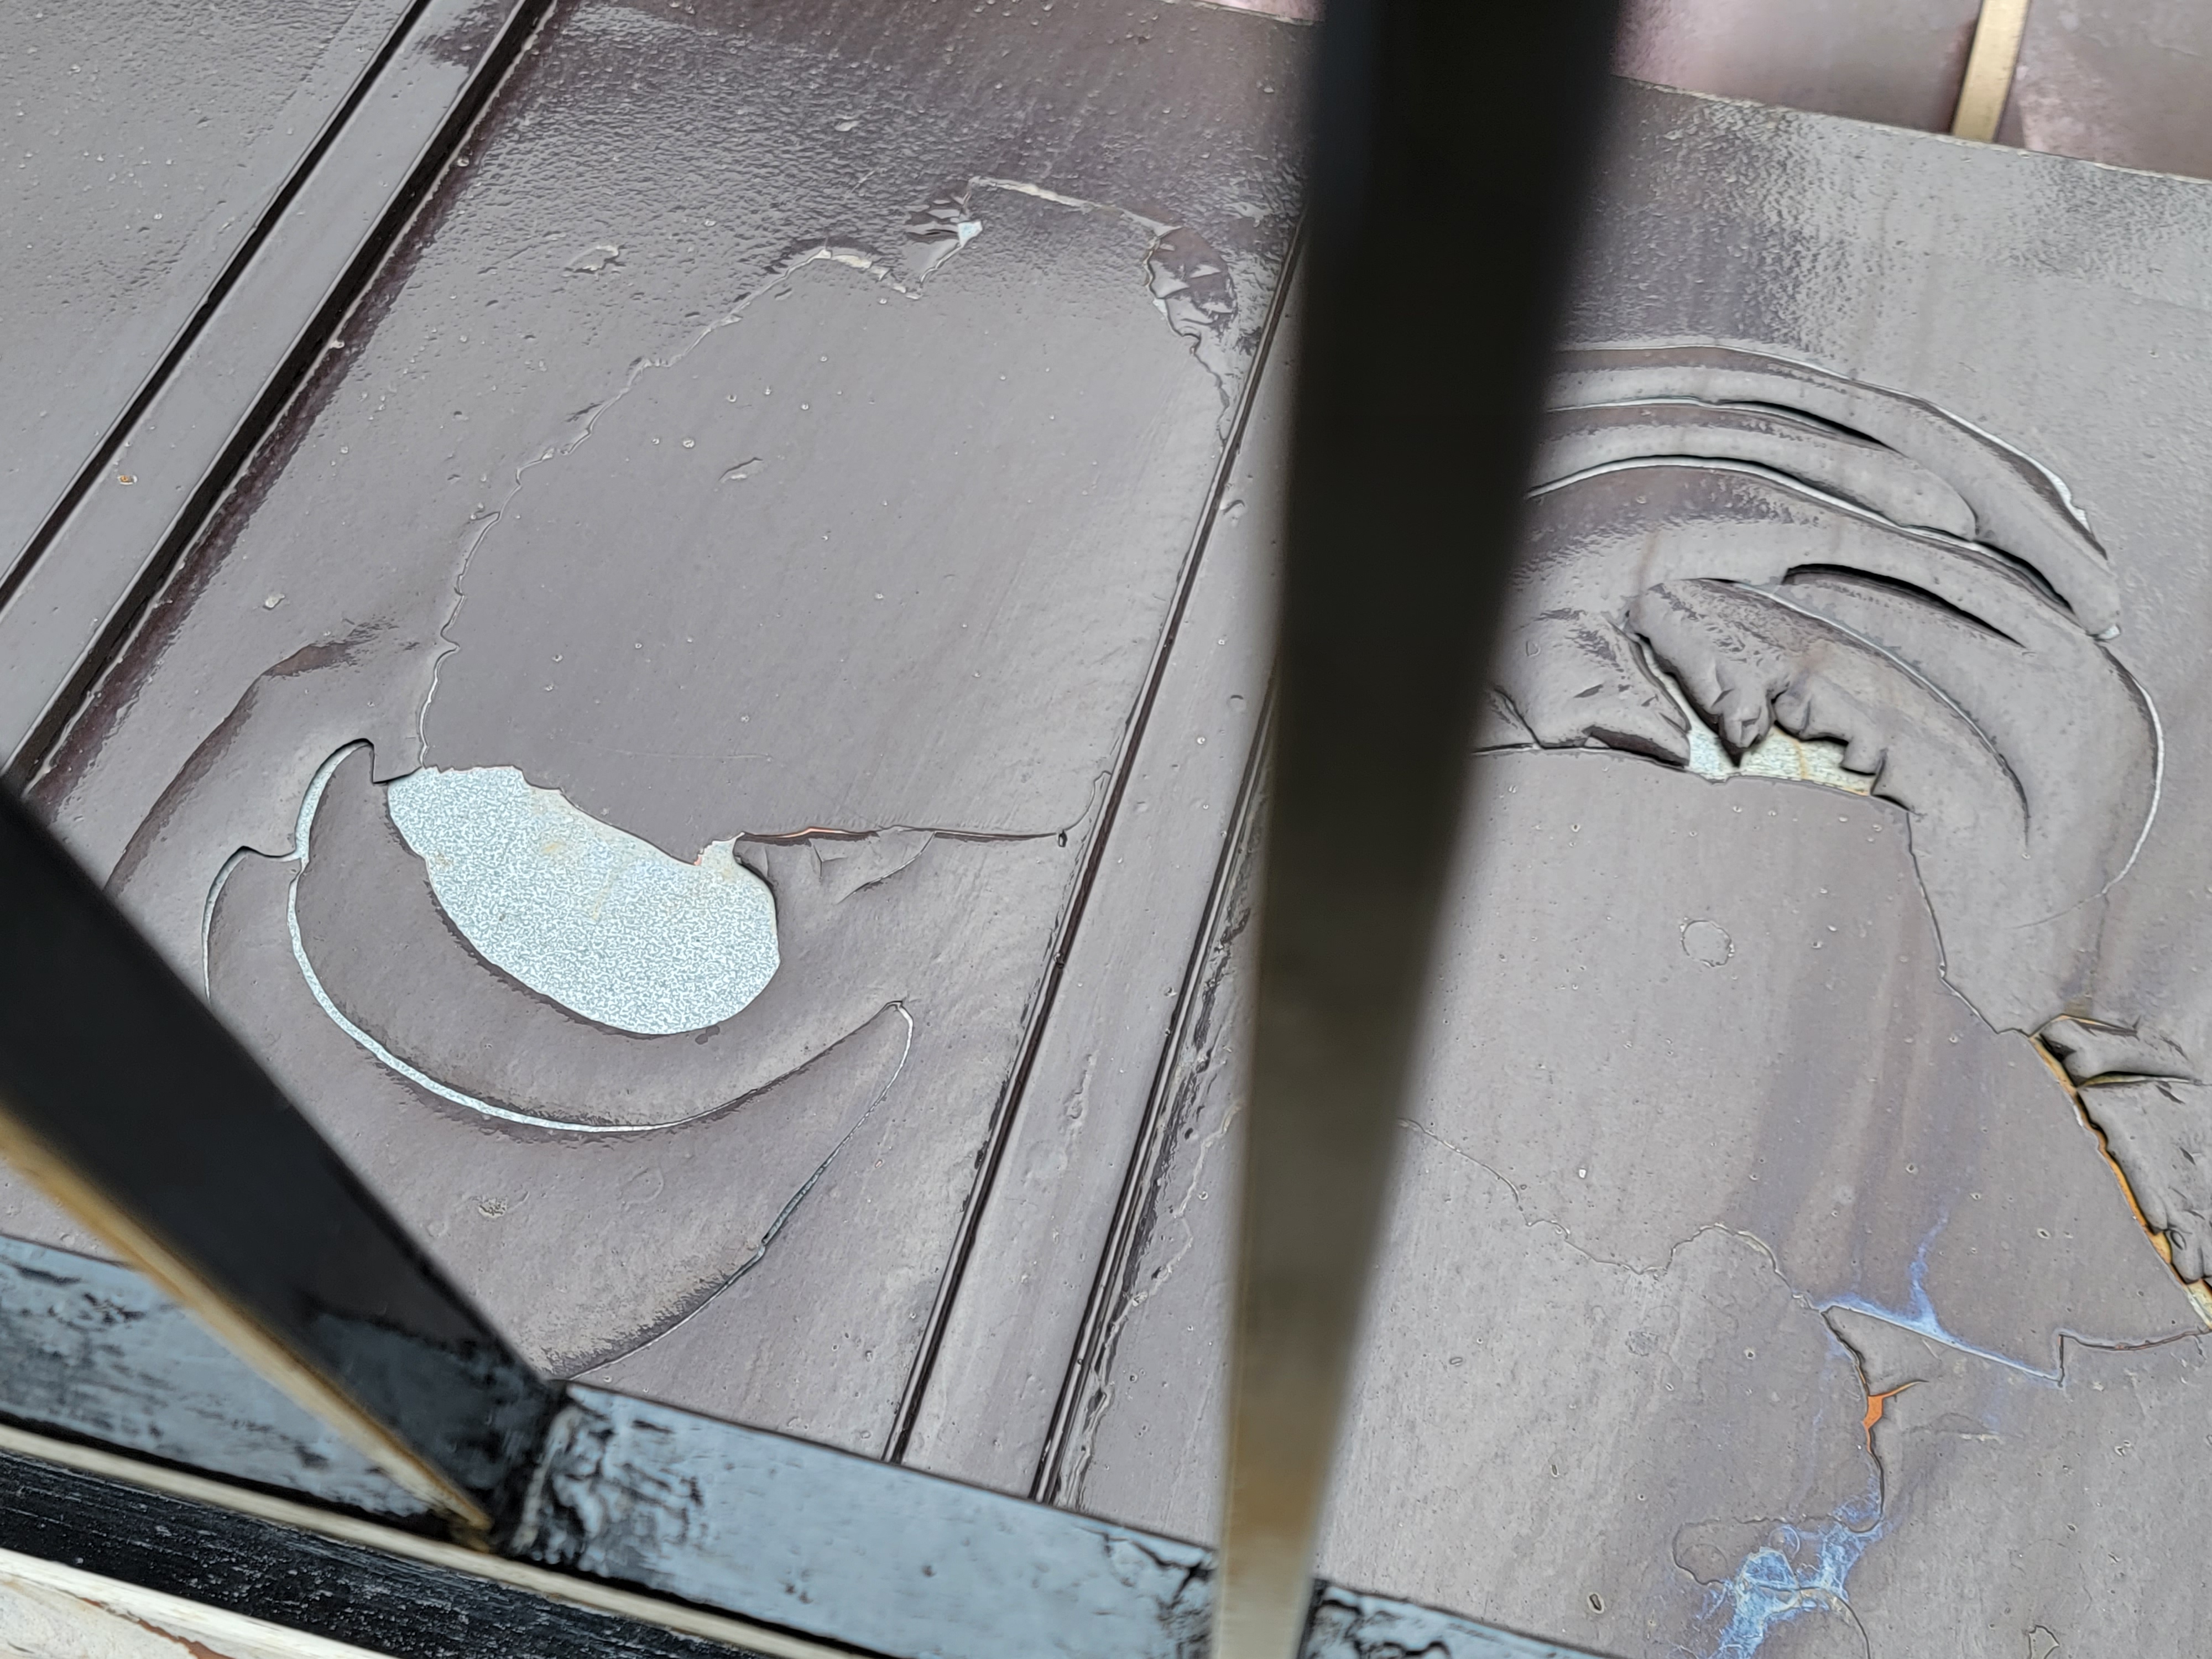 柏市あけぼのにて民家の屋根の塗装補修を行ってきました。